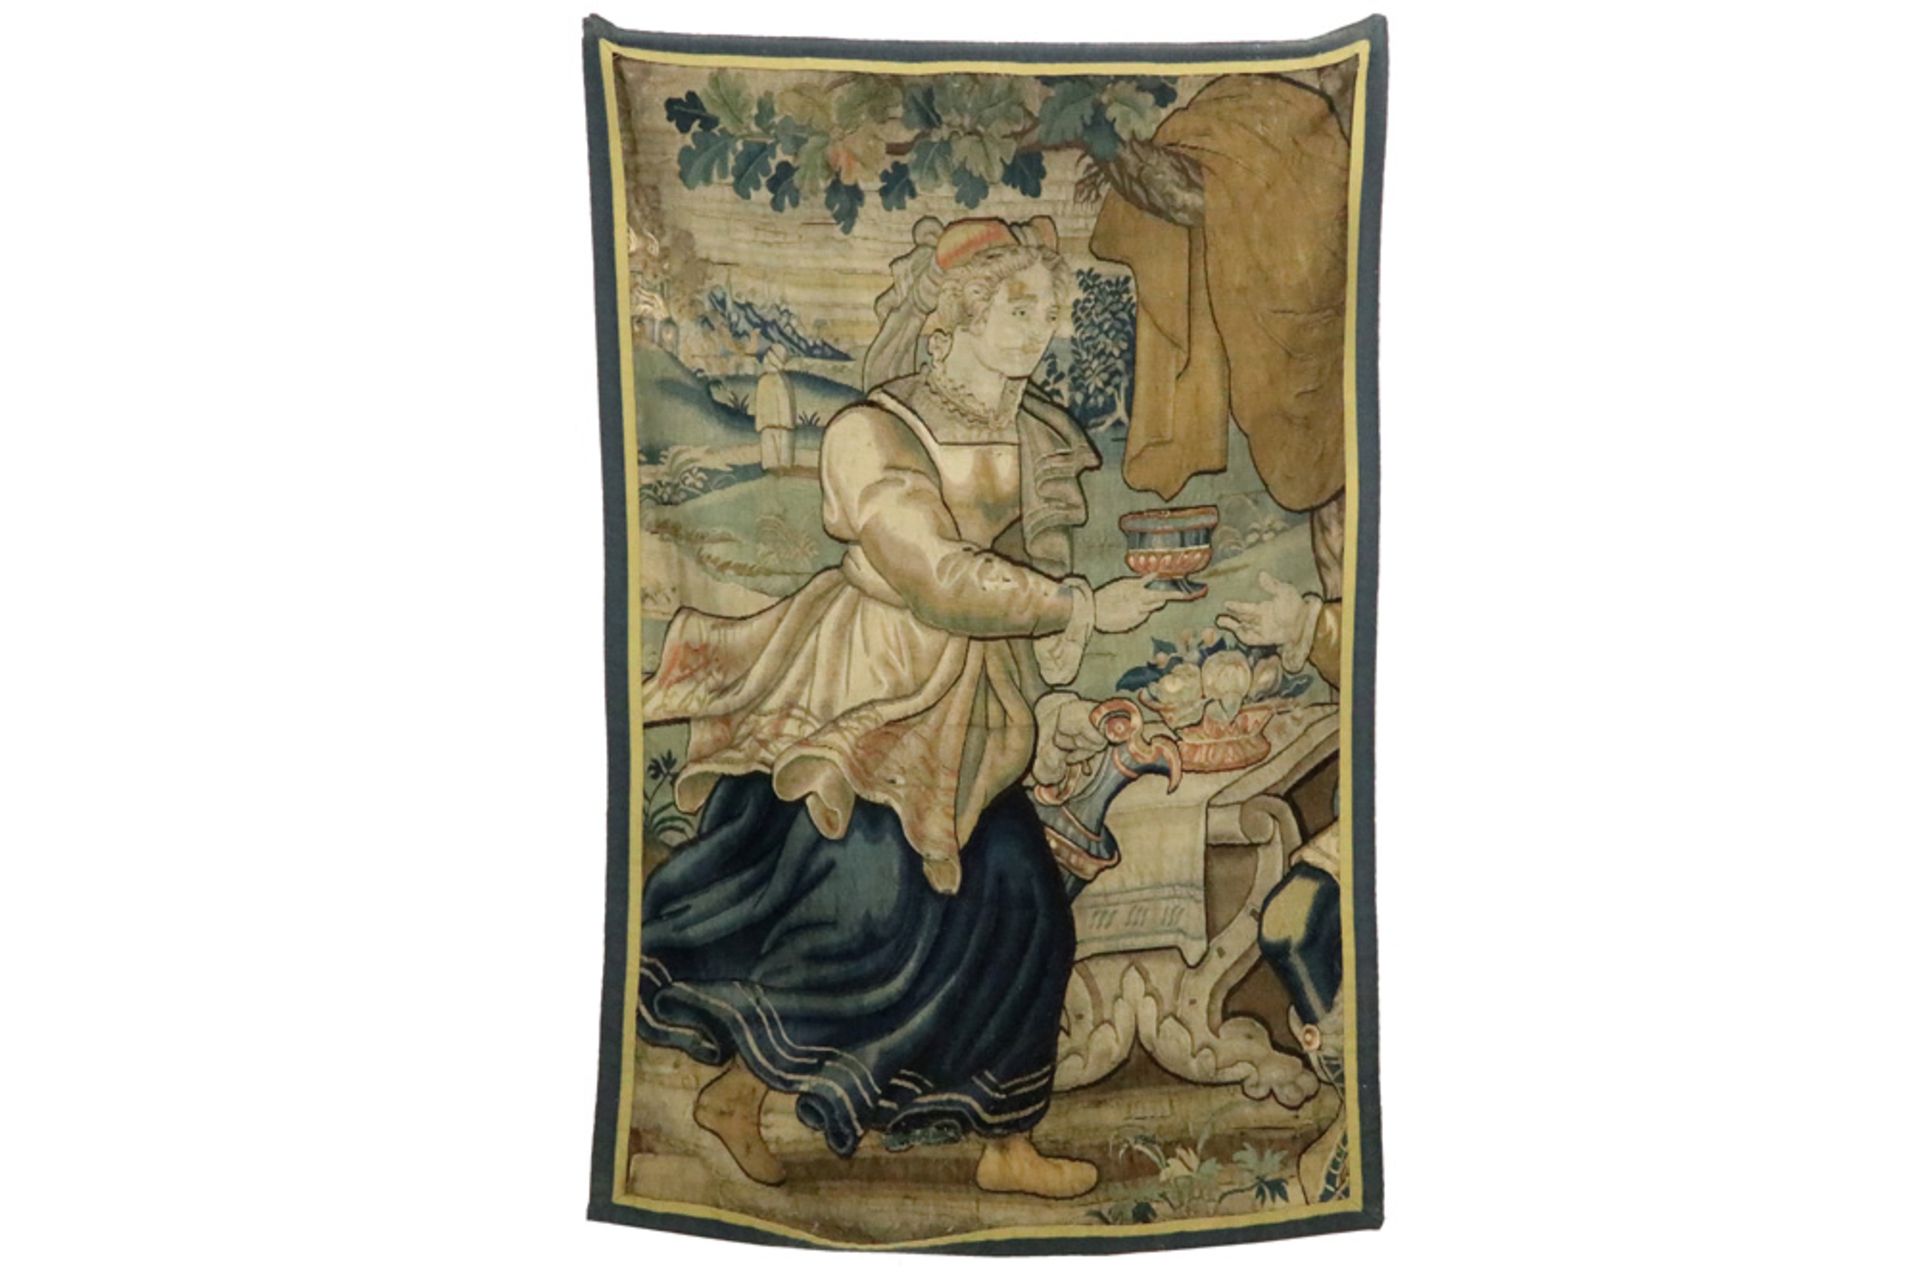 17th Cent. Flemish tapestry fragment, probably from Audenaerde || VLAANDEREN - 17° EEUW fragment van